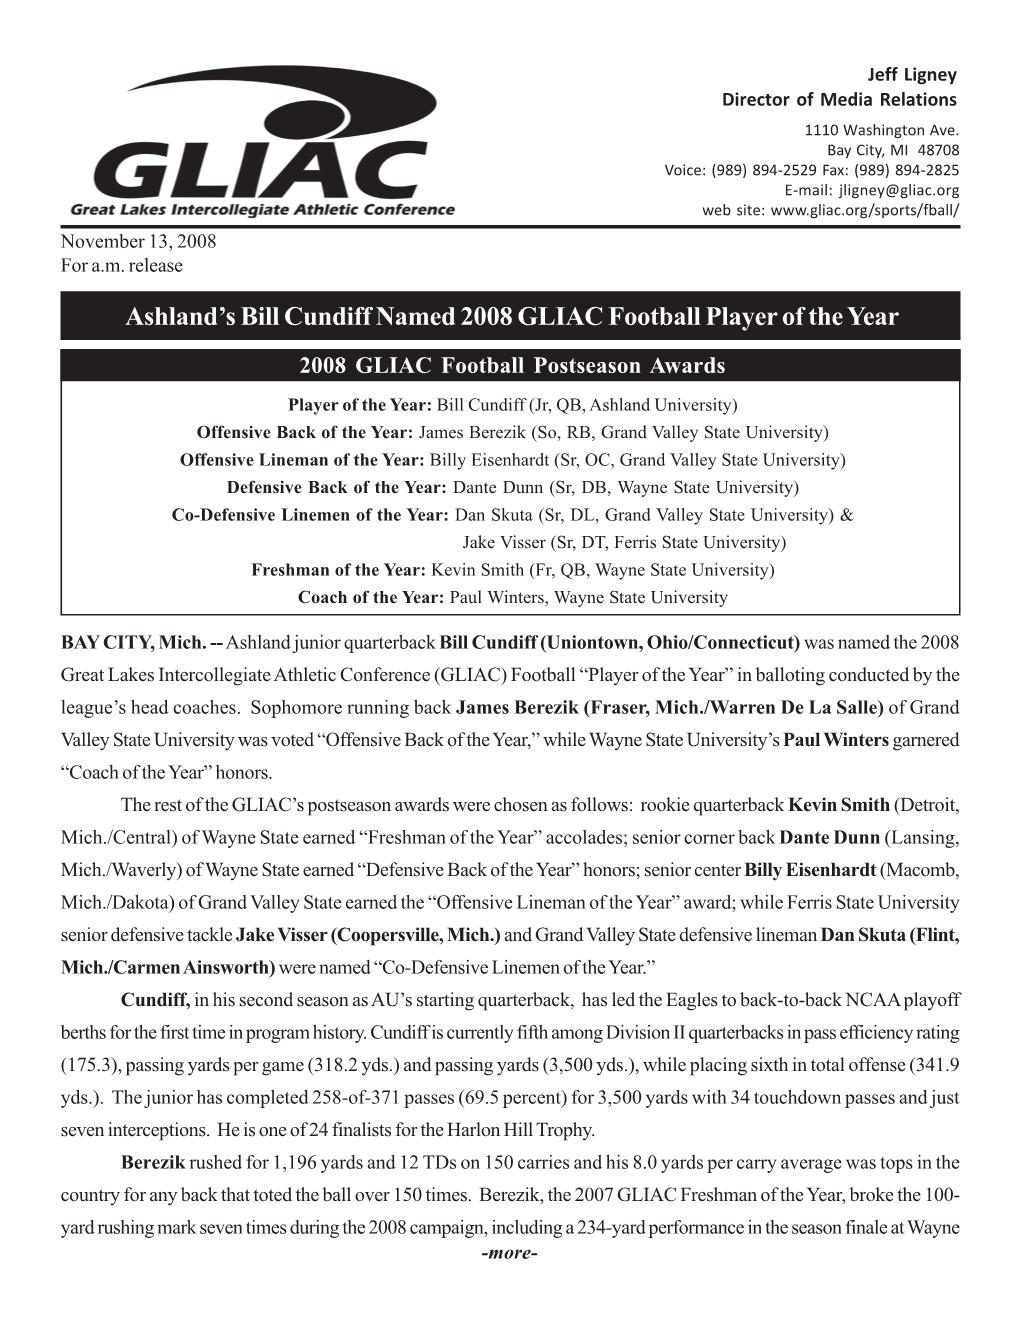 All-GLIAC Football Teams